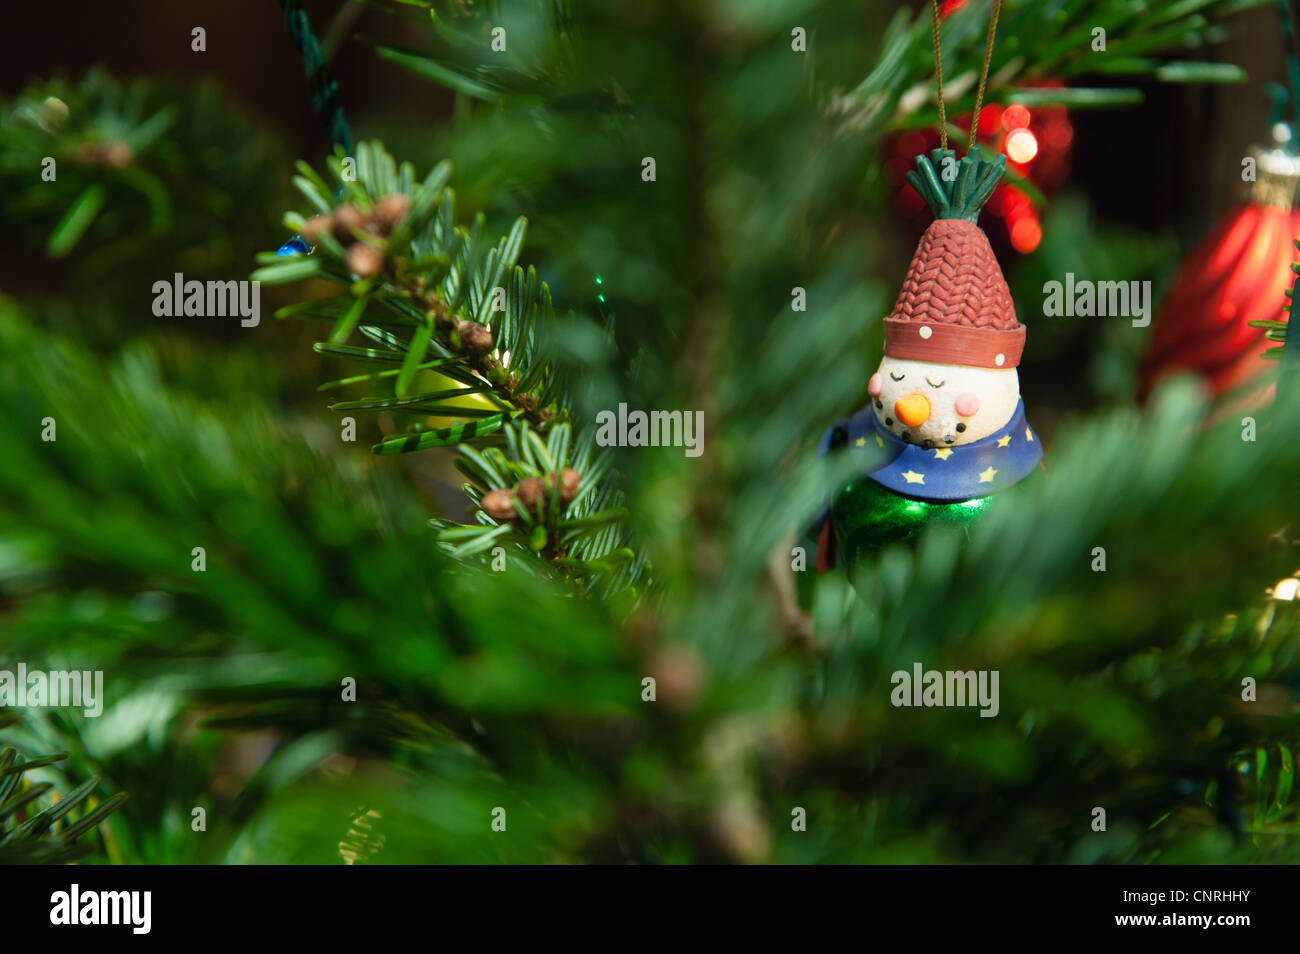 Christmas ornament hanging on Christmas tree Stock Photo